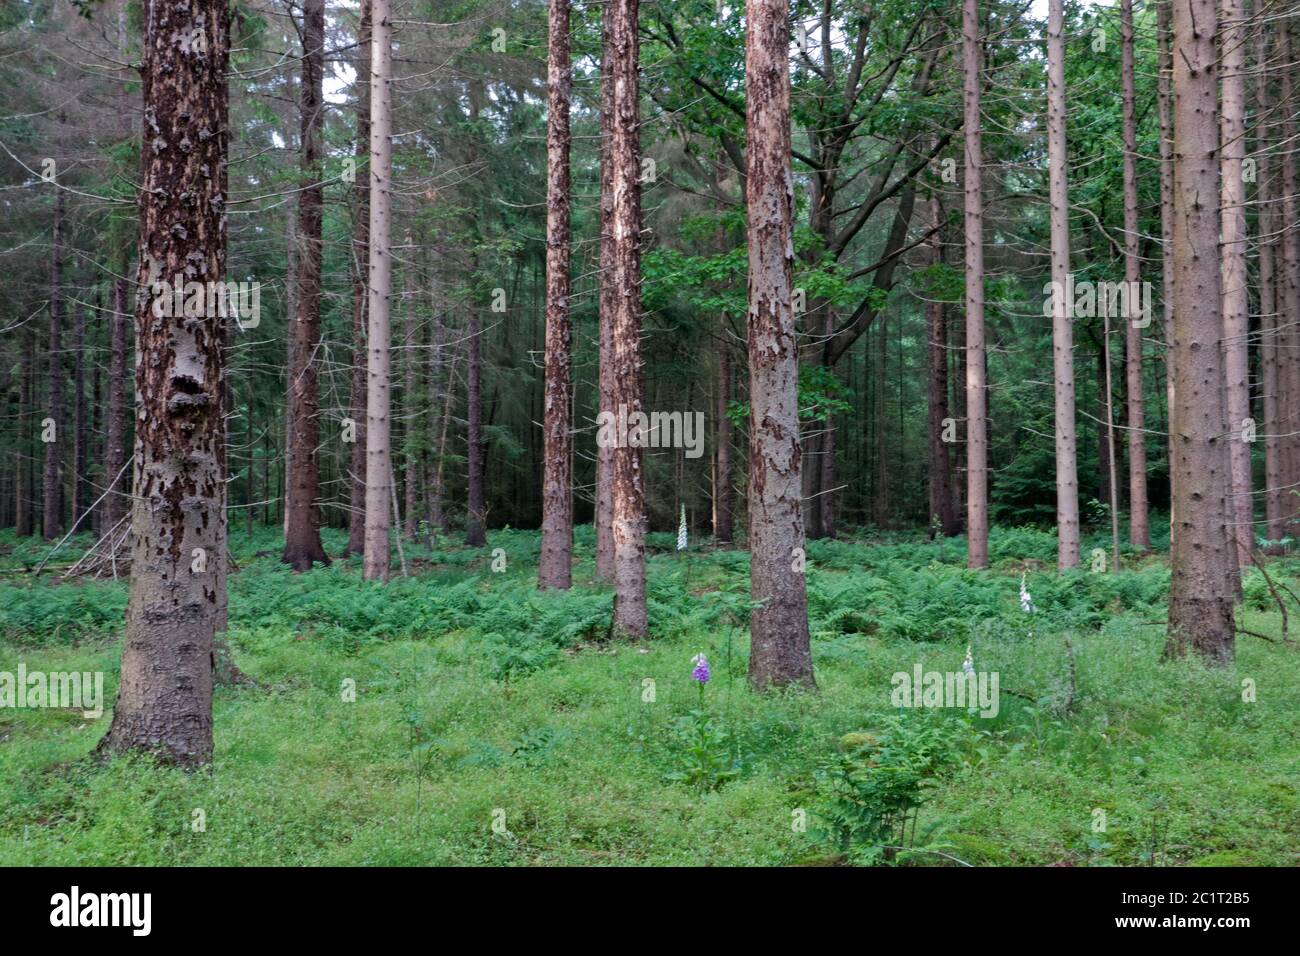 Mortalidad de árboles en los países Bajos: Árboles de picea dañados por escarabajos de la corteza de la picea Foto de stock